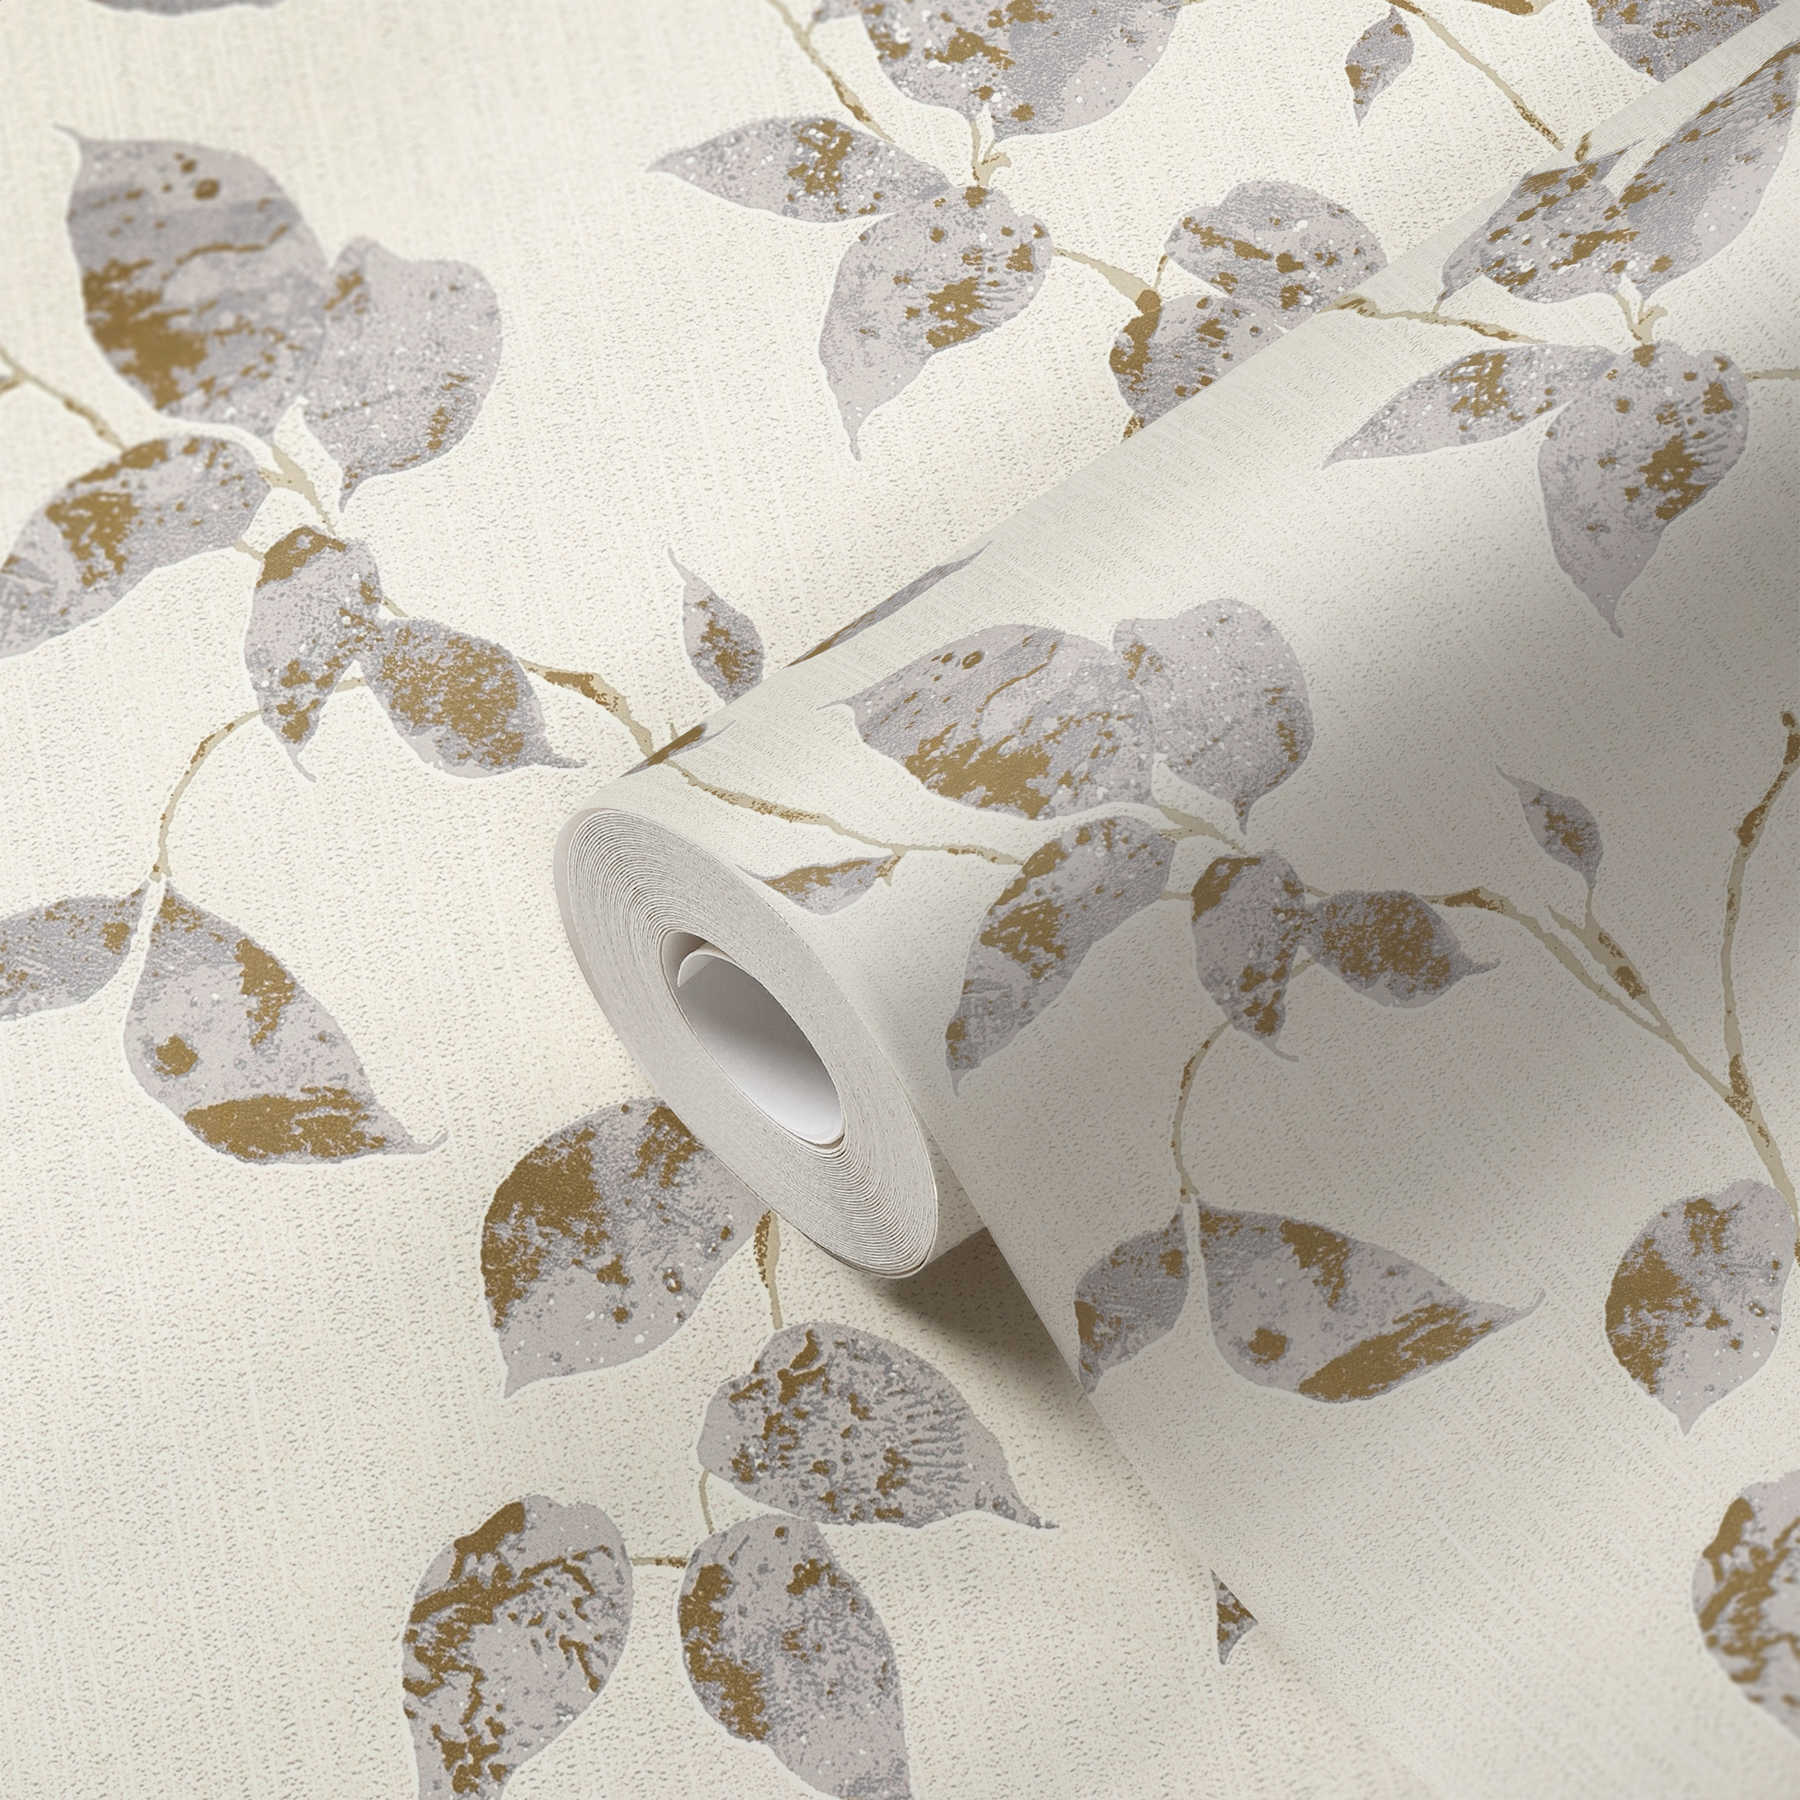             Papel pintado texturizado con zarcillos de hojas y acento metálico - Gris, Blanco
        